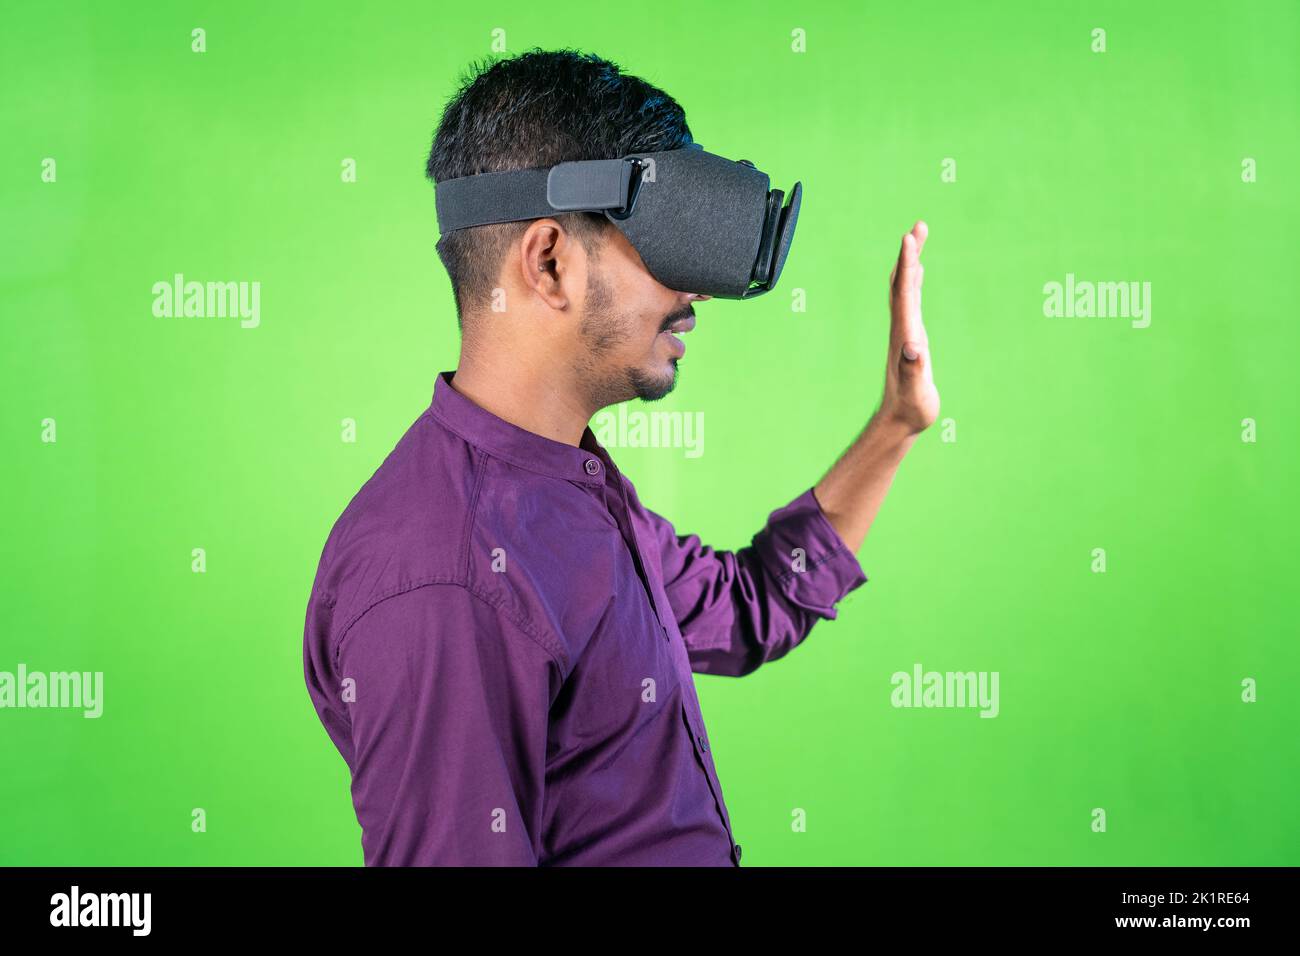 Vue latérale d'un jeune homme avec un casque VR ou de réalité virtuelle saluant en disant salut en métaverse sur fond d'écran vert - concept de la technologie Banque D'Images